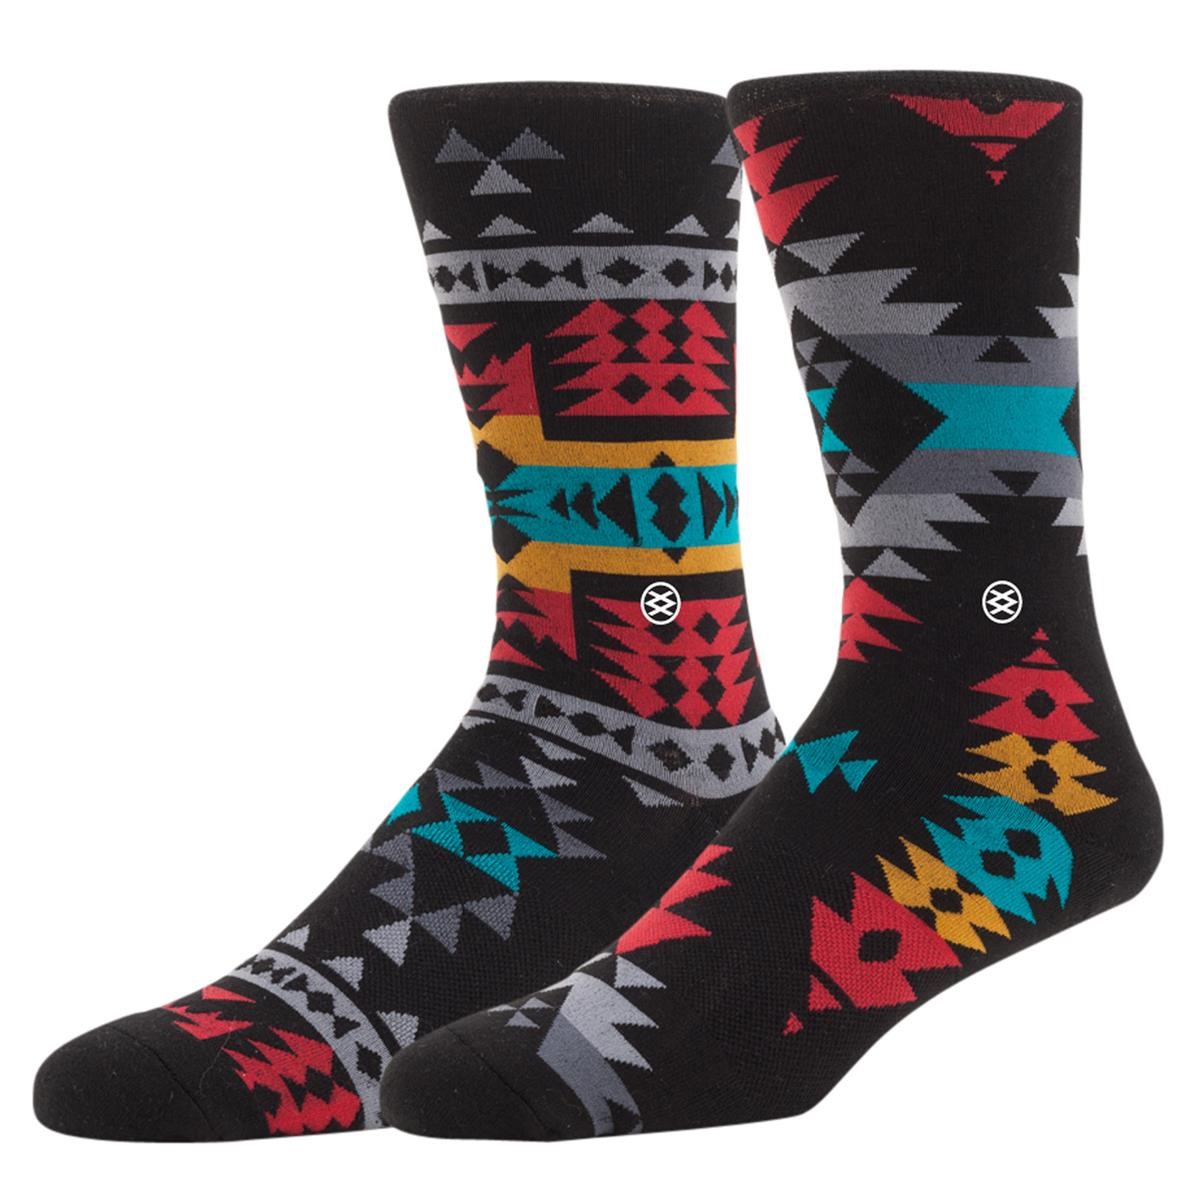 Freizeit/Streetwear Bekleidung-Socken/Strümpfe/Strumpfhosen - Stance Socken Reservation Black